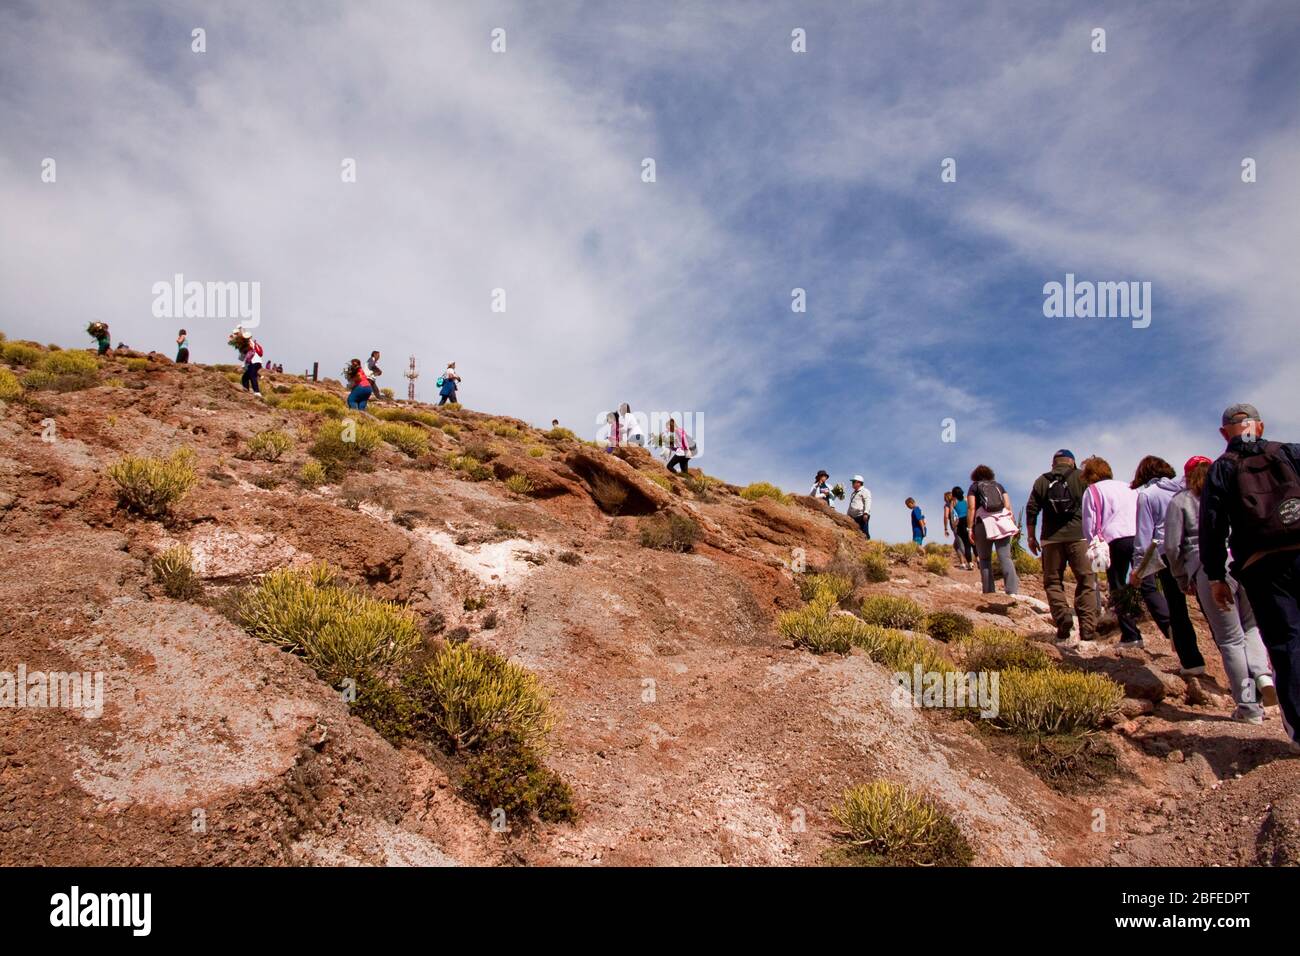 Subida al Pico La Atalaya, Gran Canaria Stock Photo